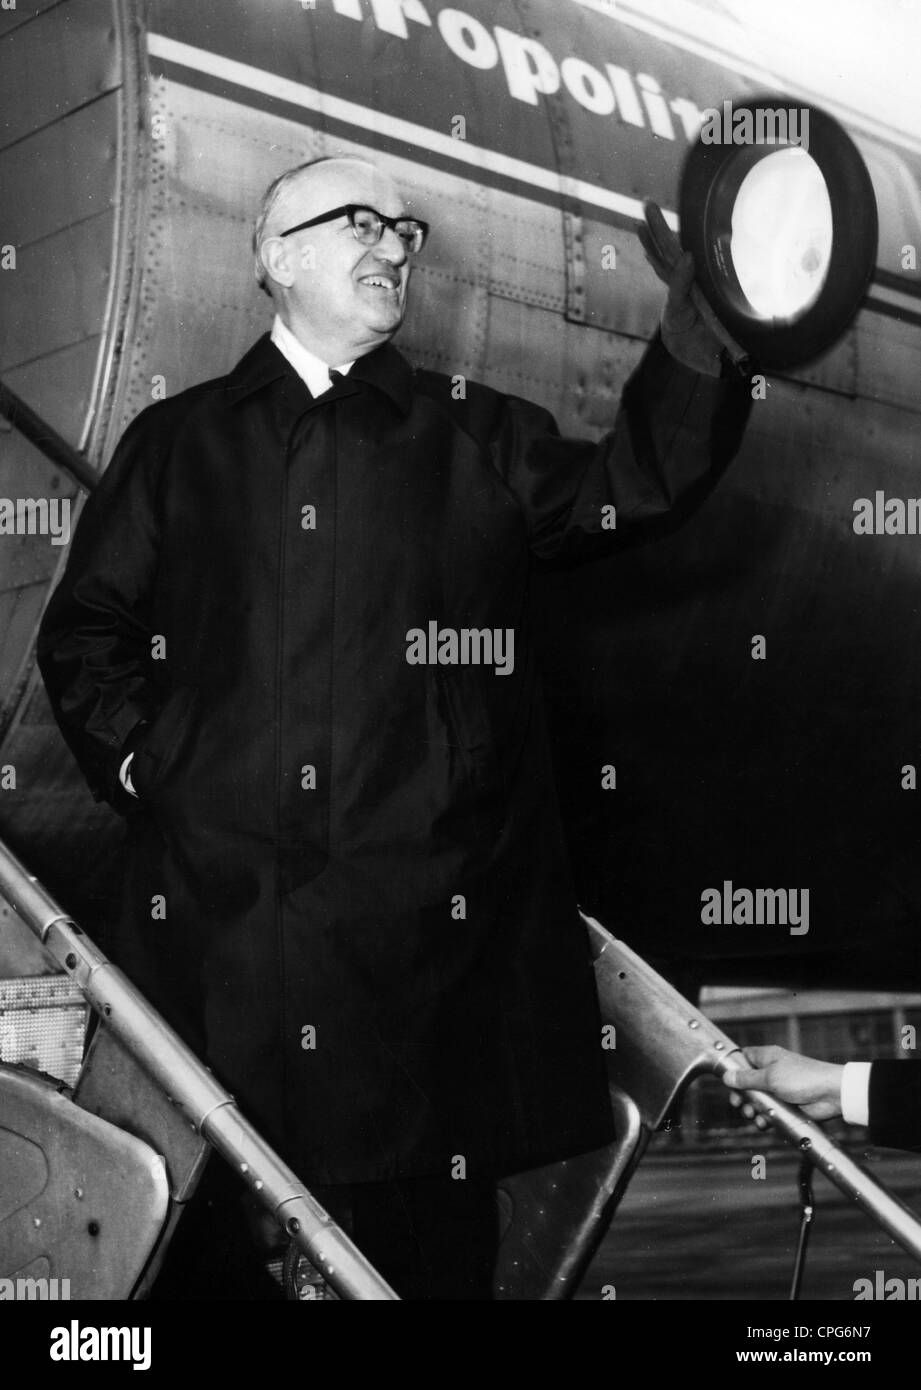 Hallstein, Walter, 17.11.1901 - 29.3.1982, giurista e politico tedesco (CDU), presidente della Commissione europea 1958 - 1967, all'aeroporto, intorno al 1960, Foto Stock